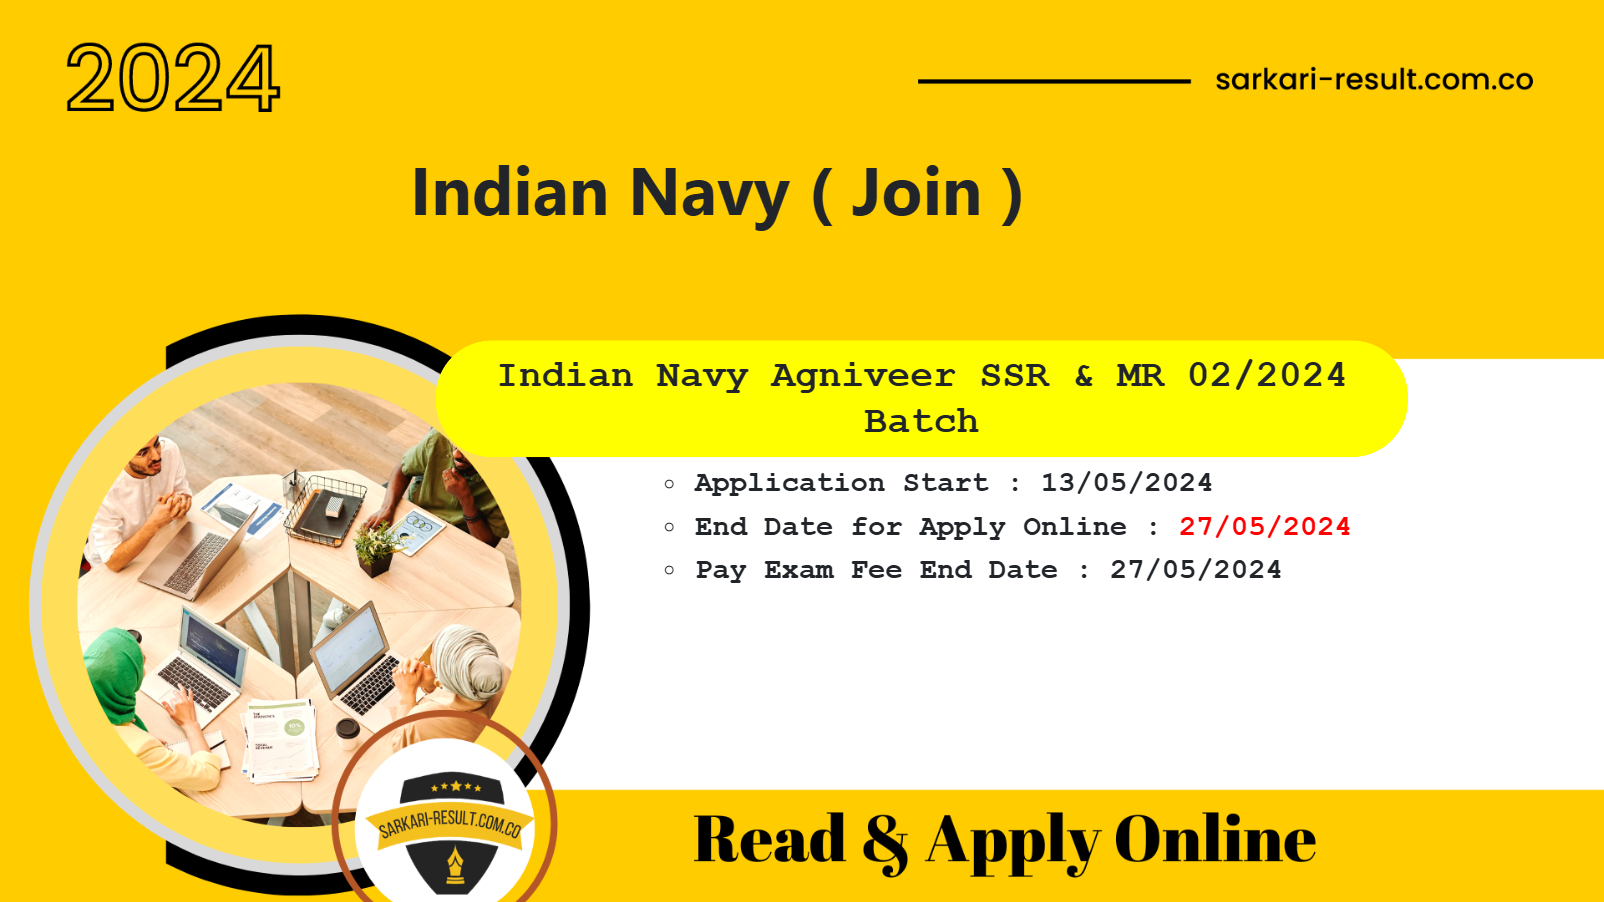 Indian Navy Agniveer SSR / MR Online Form 2024 for 02/2024 Batch